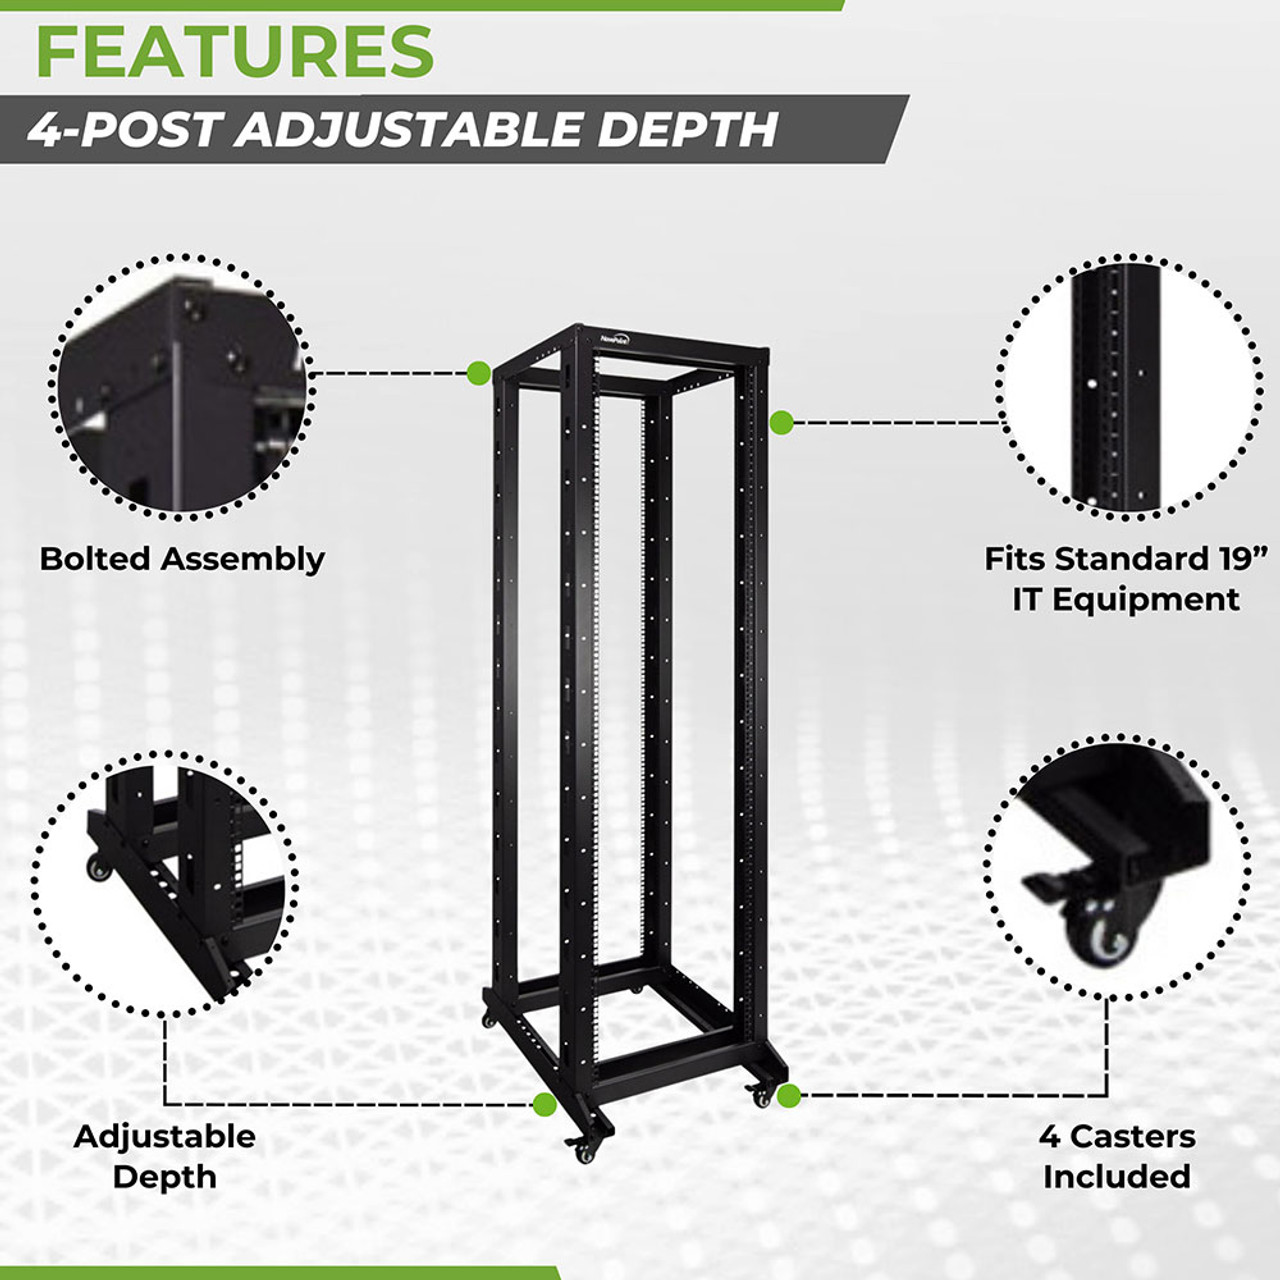 4-Post open frame server rack, adjustable depth 42U